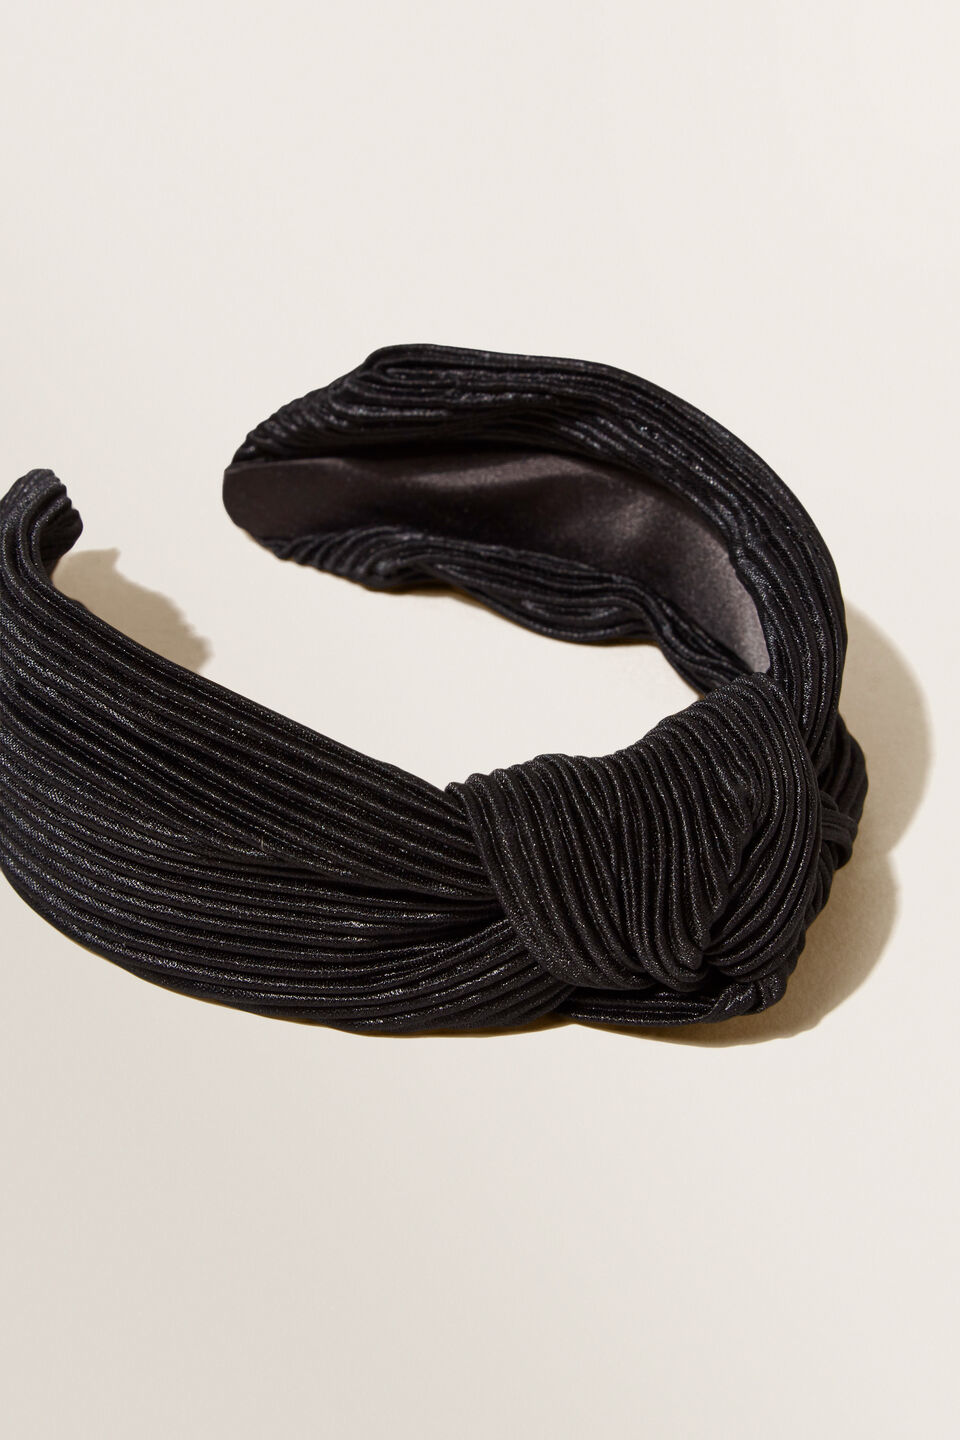 Knotted Pleat Headband  Black